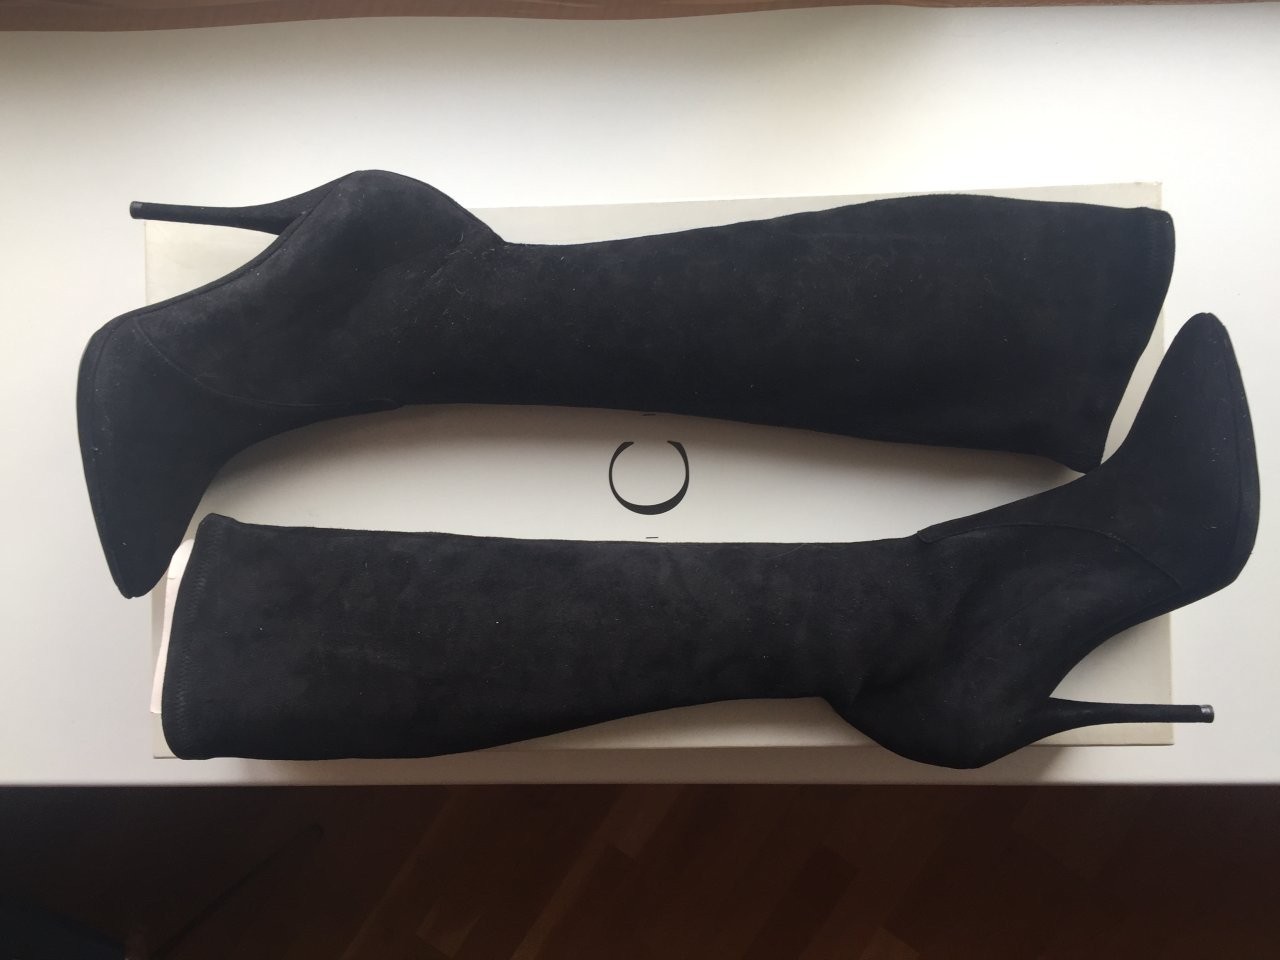 Сапоги чулки новые casadei италия 39 размер черные замша внутри кожа стрейтч платформа 1 см каблук ш - фотография